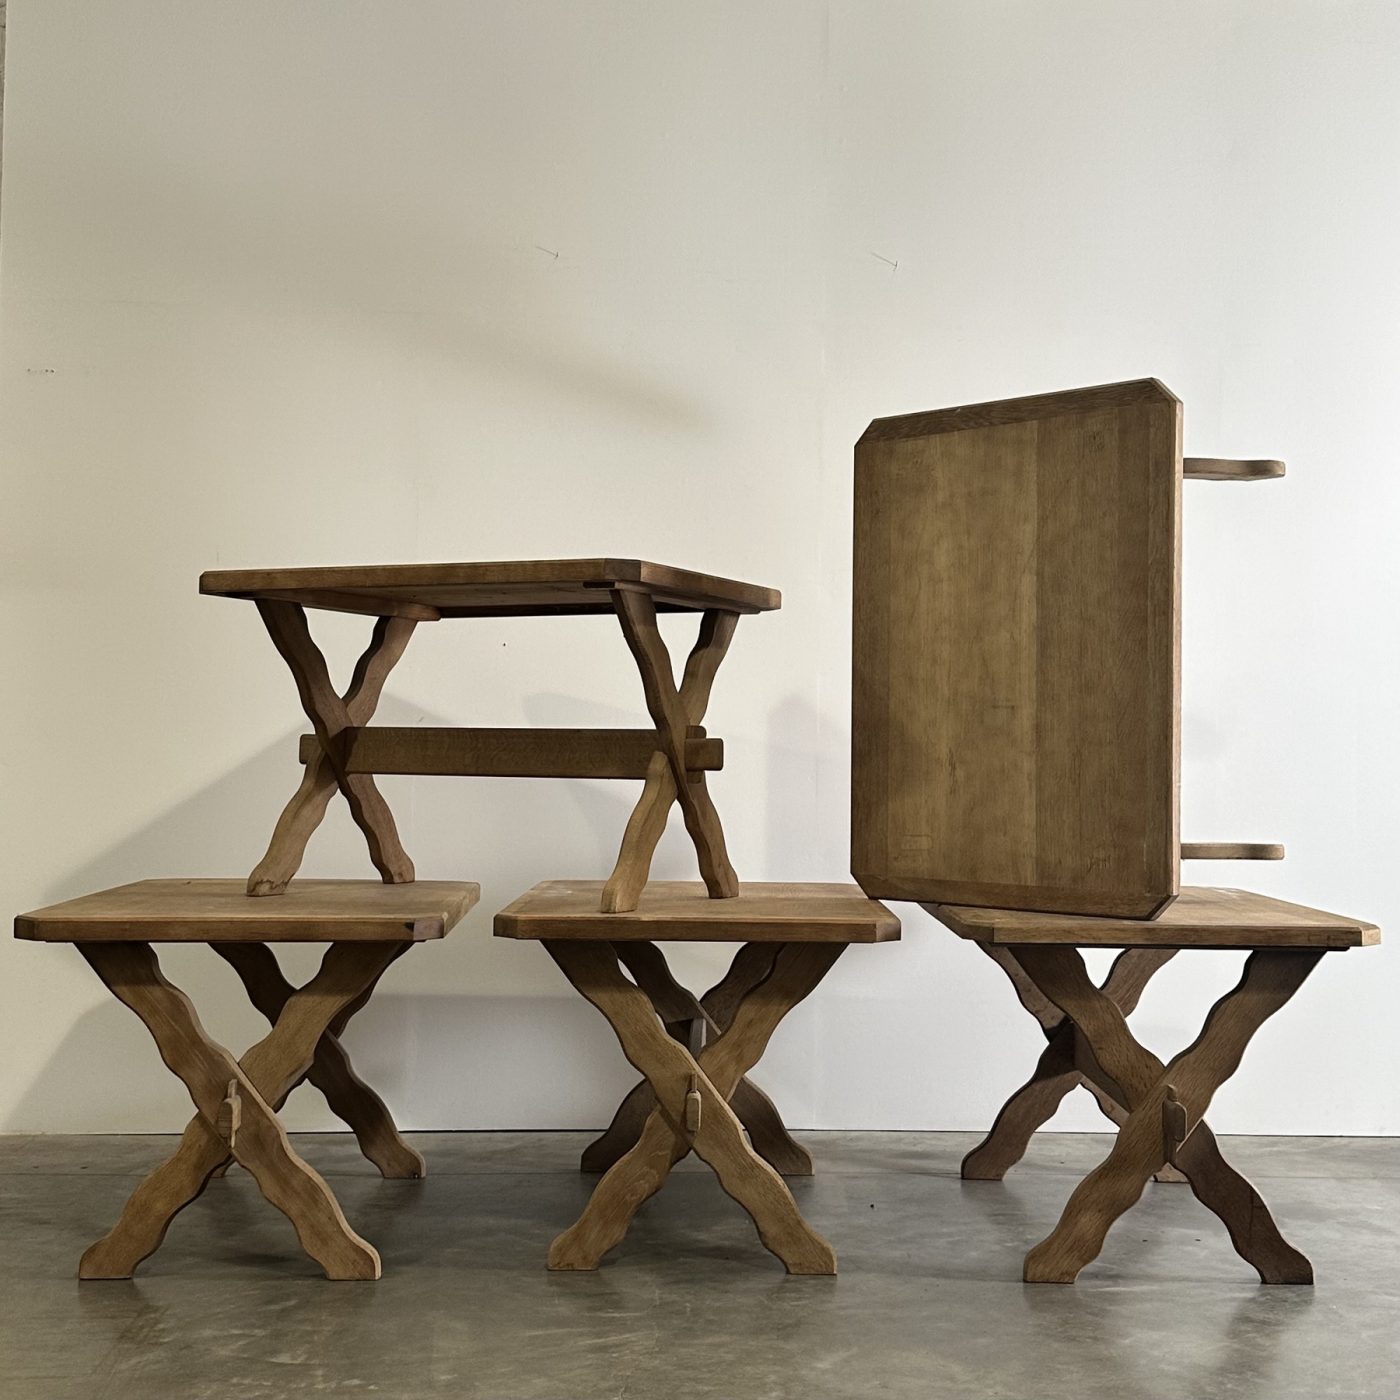 objet-vagabond-oak-tables0004